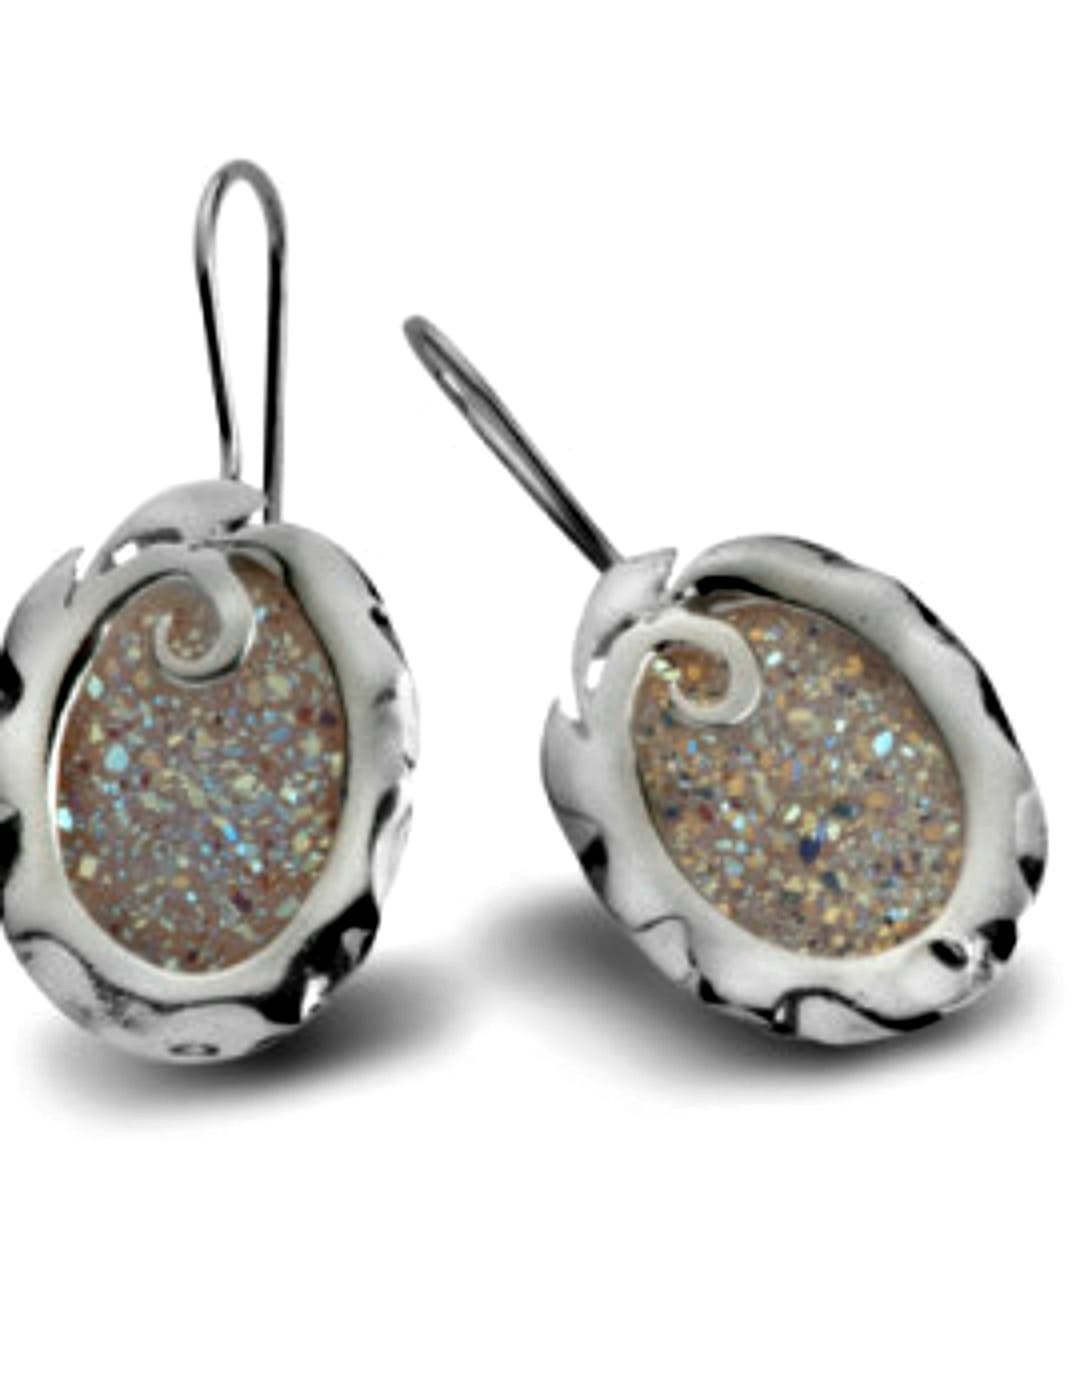 Bluenoemi Jewelry Earrings silver Earrings Sterling silver Druze Druzy stone  Dangling Designer Israeli jewelry